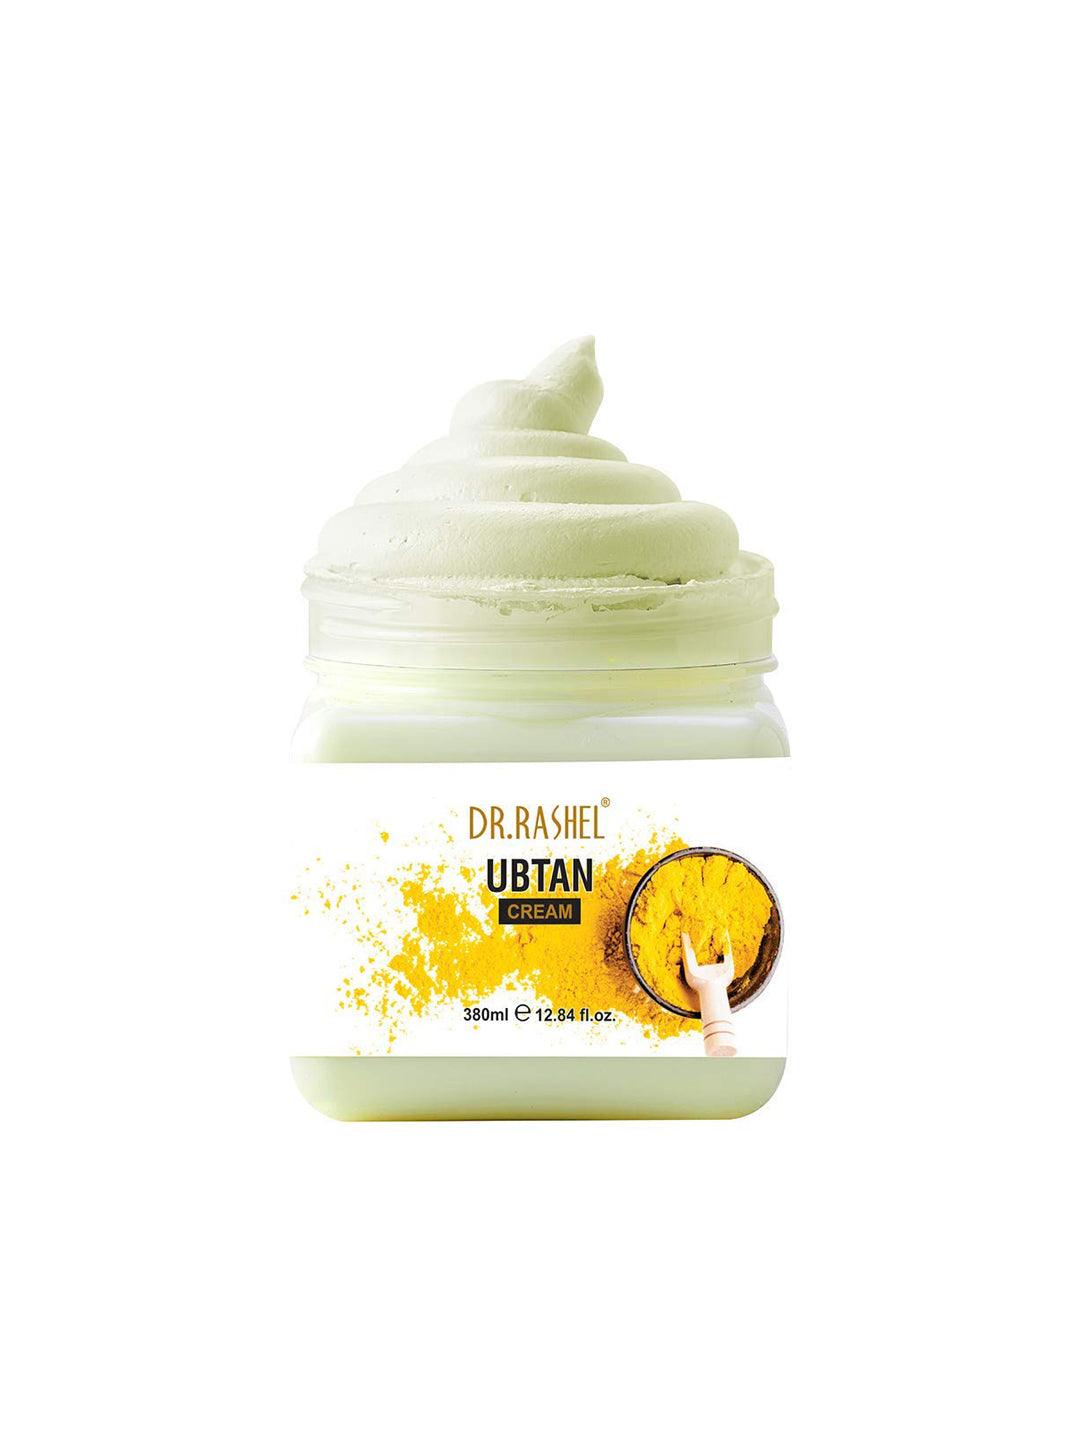 Ubtan Face & Body Cream 380 Ml - MARKET 99